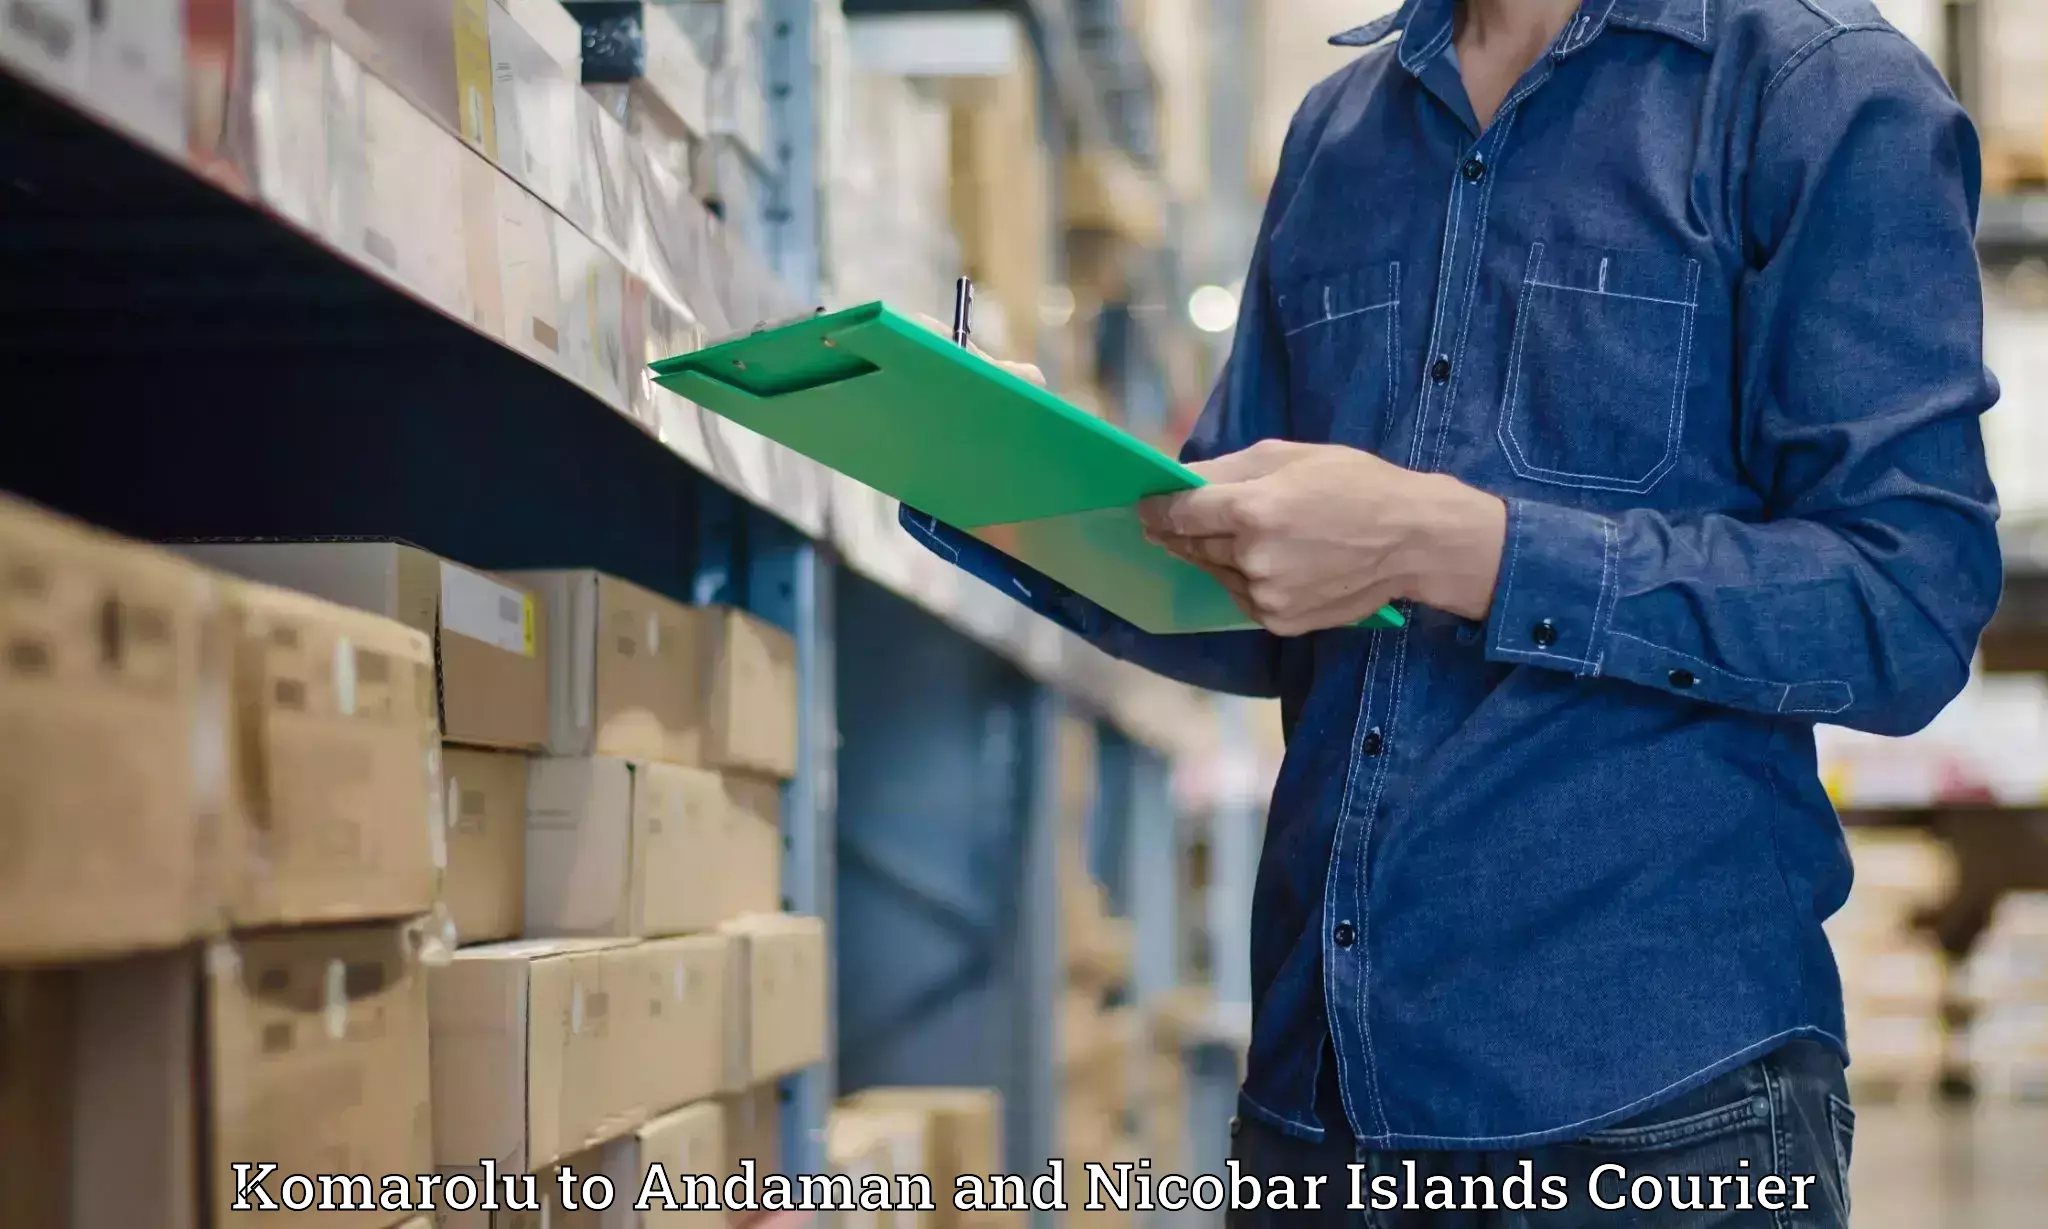 Reliable logistics providers Komarolu to Andaman and Nicobar Islands